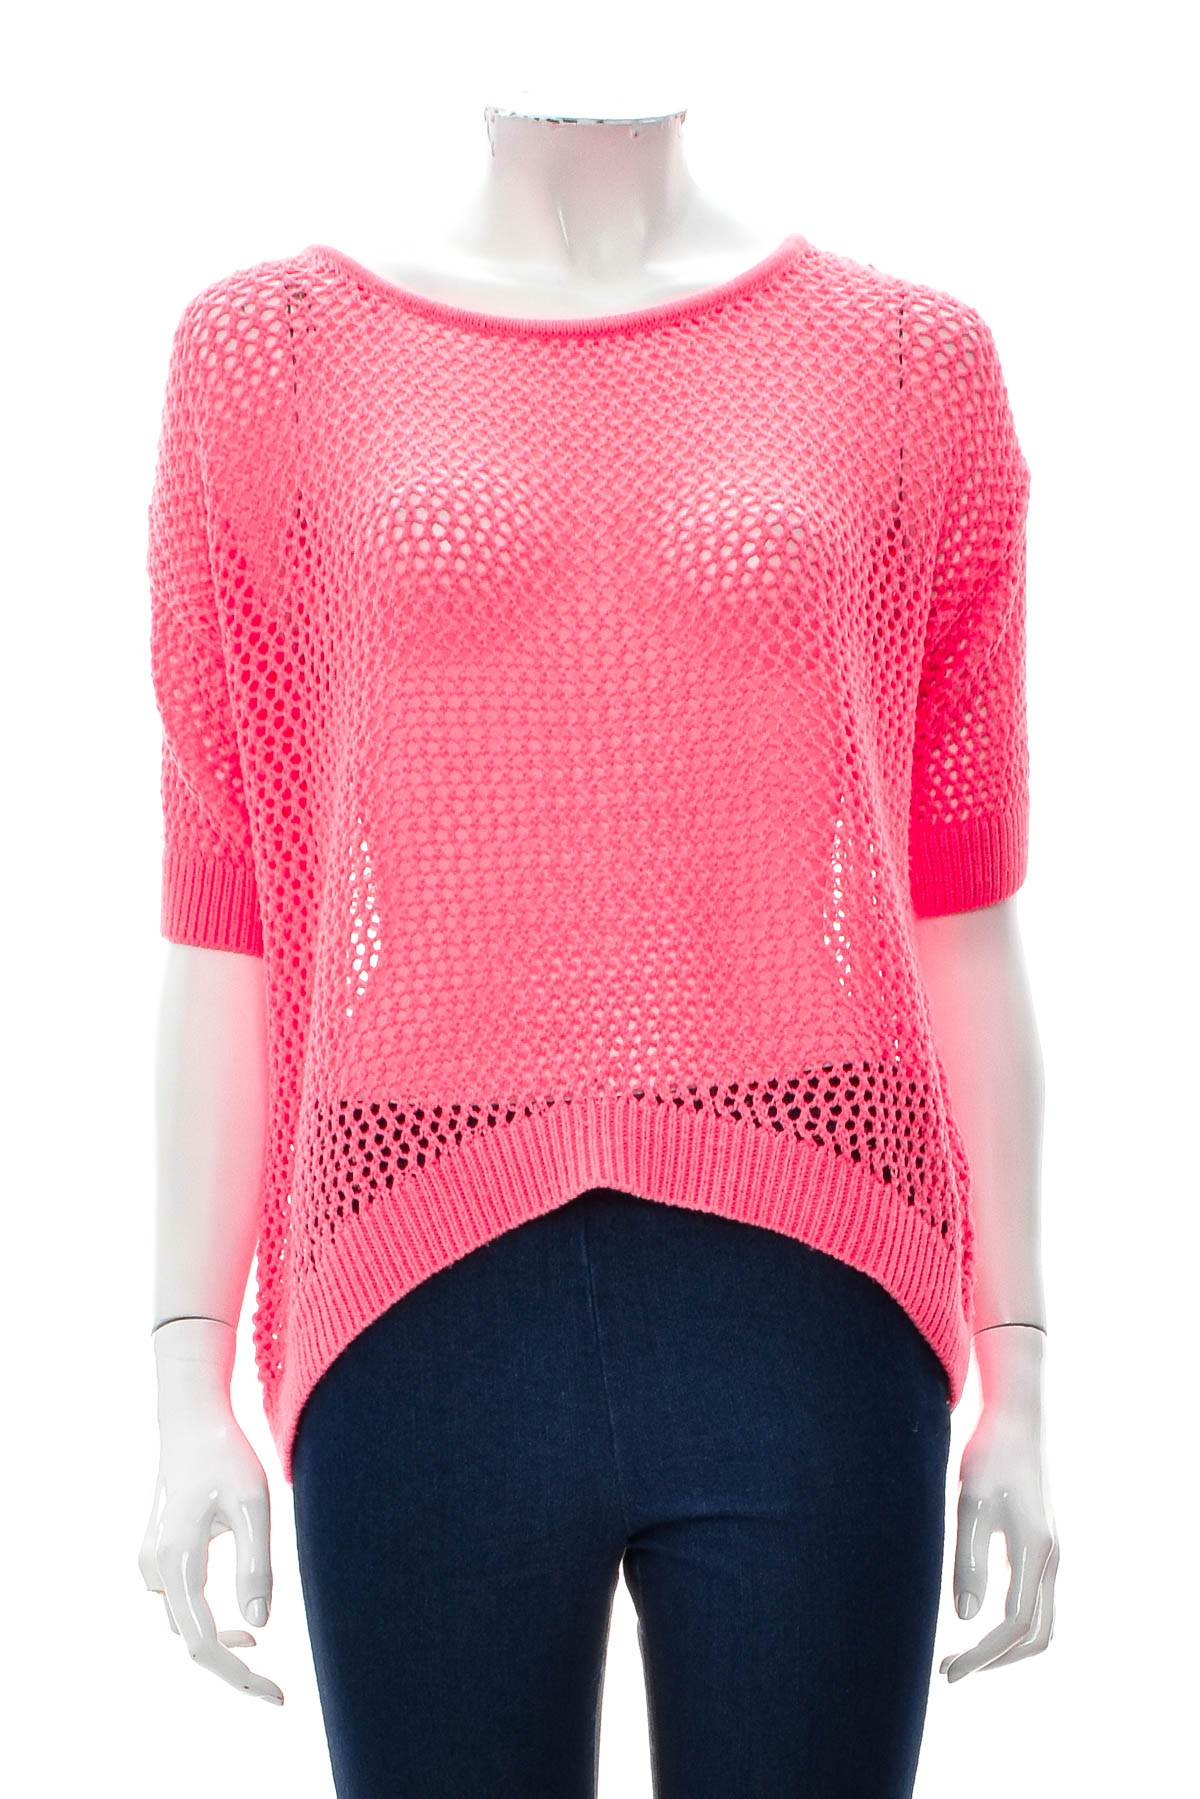 Women's sweater - CoolCat - 0